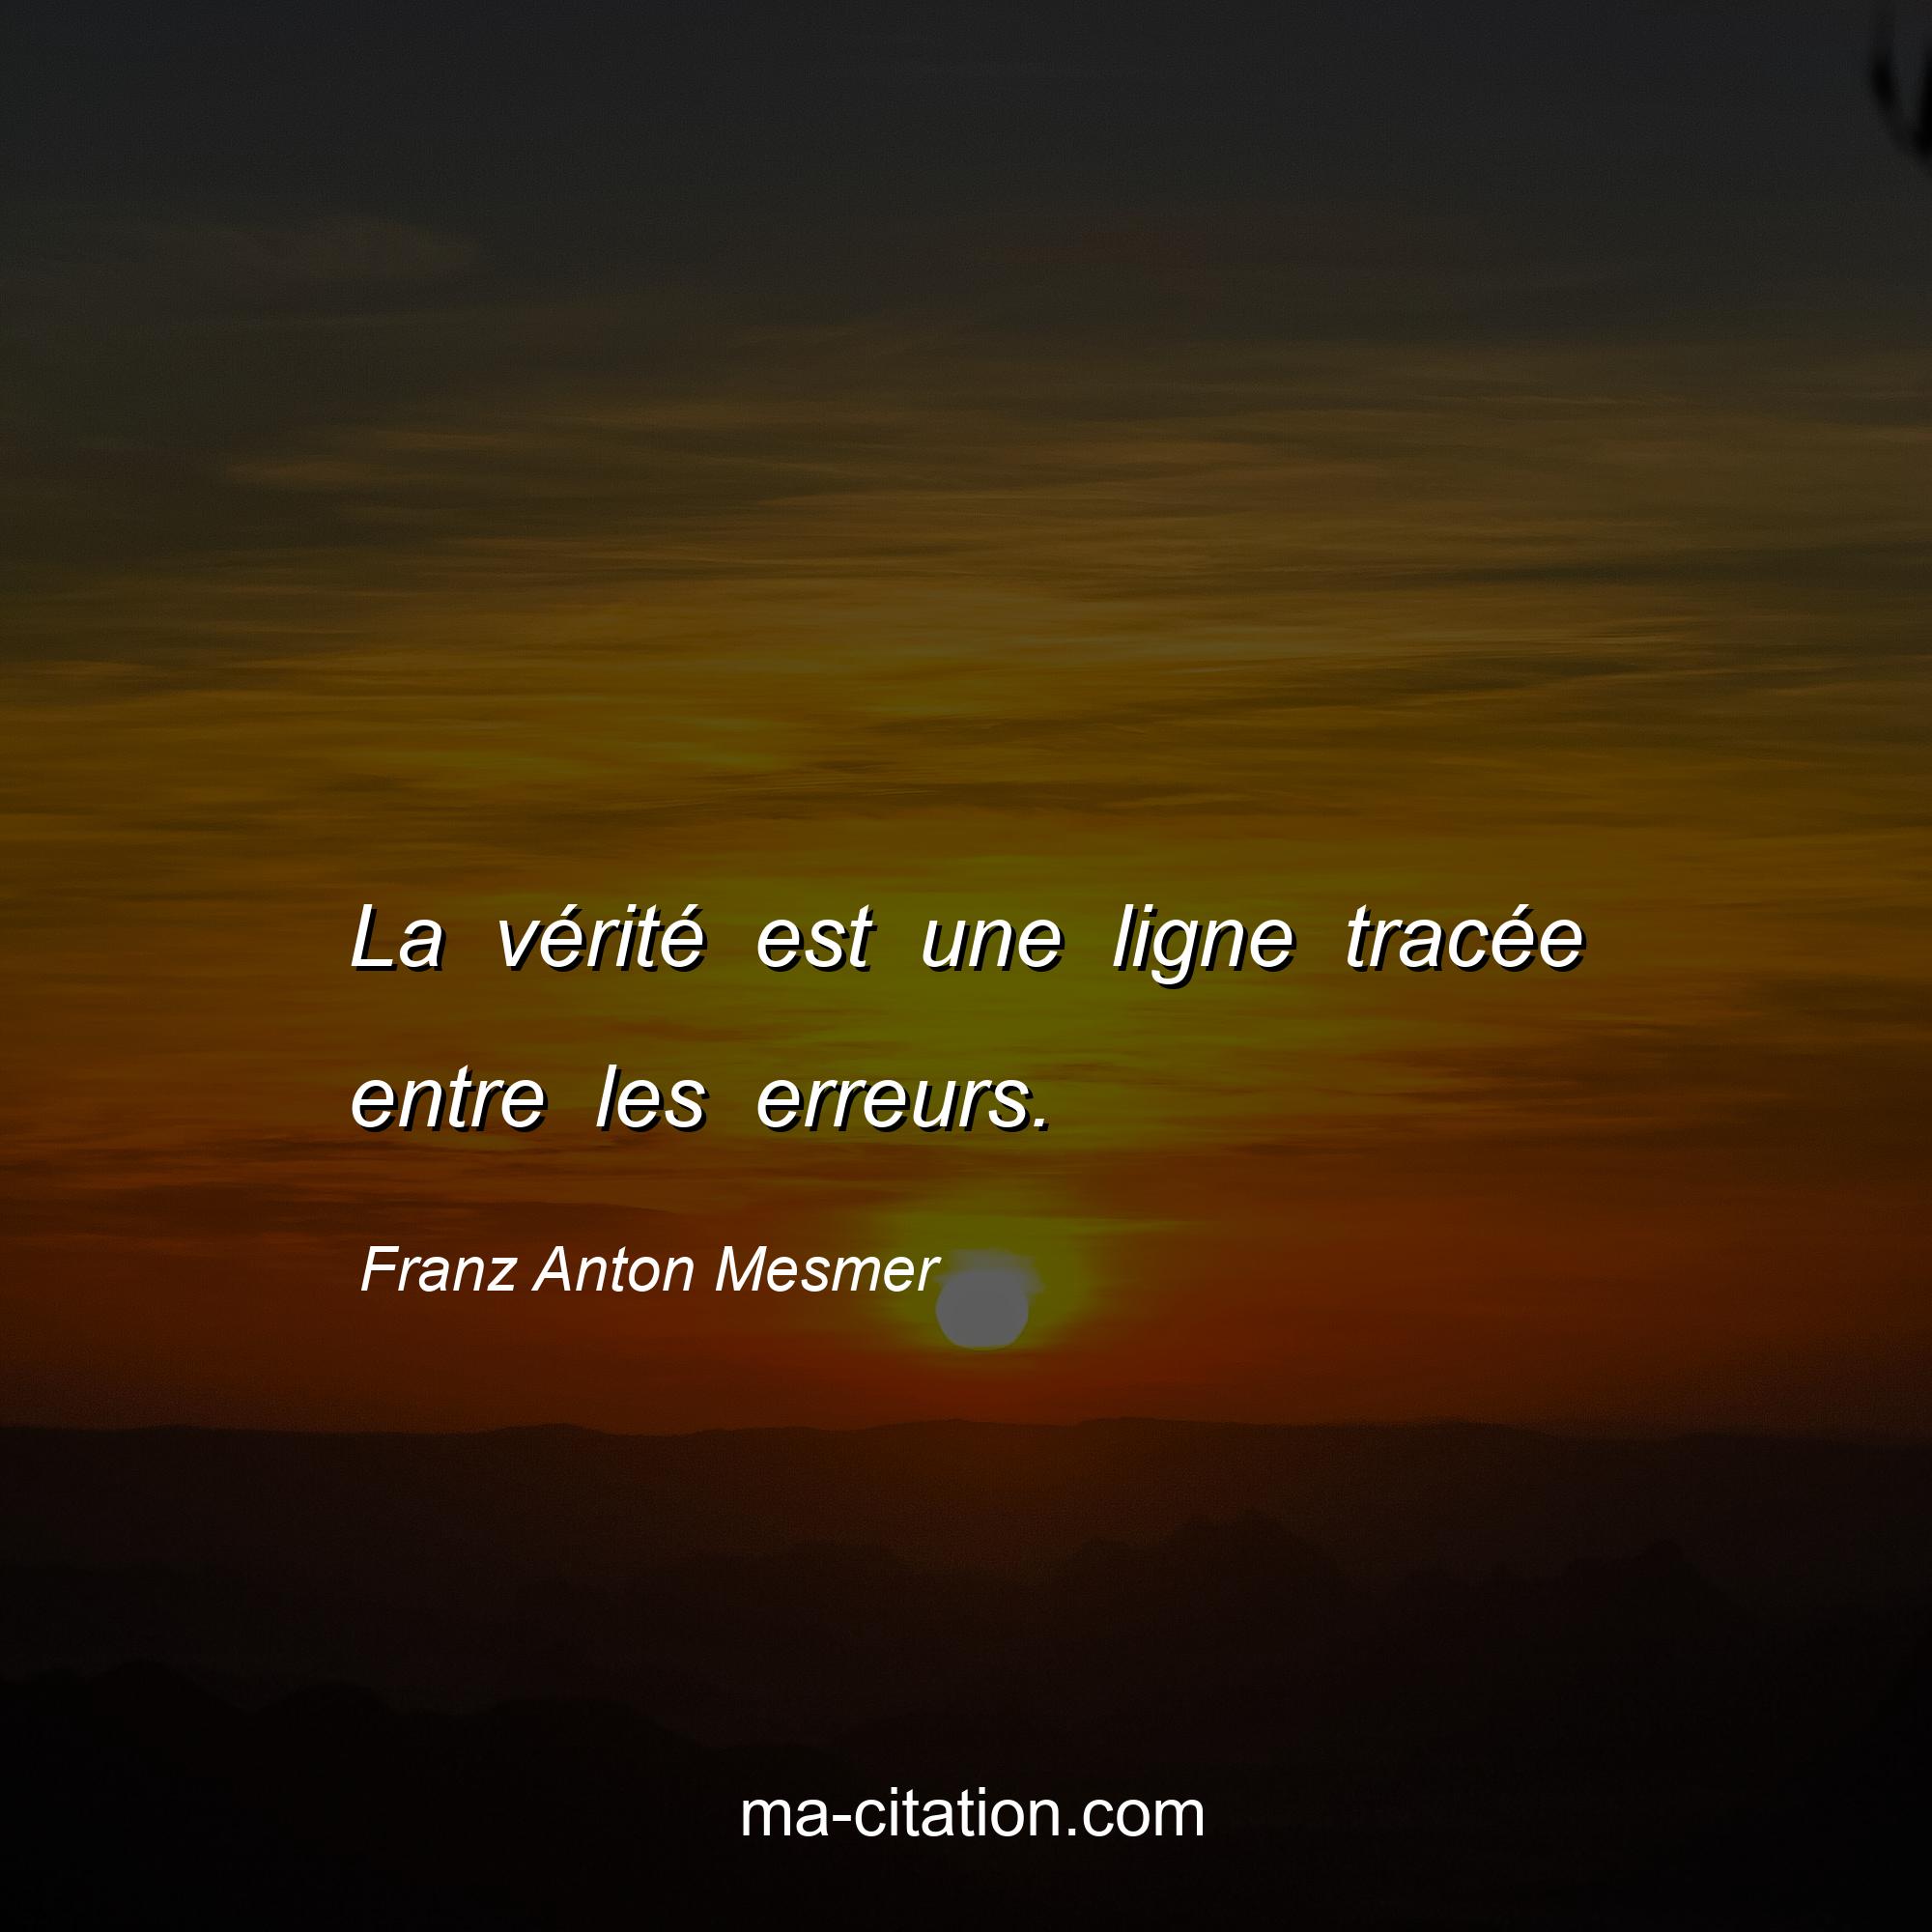 Franz Anton Mesmer : La vérité est une ligne tracée entre les erreurs.